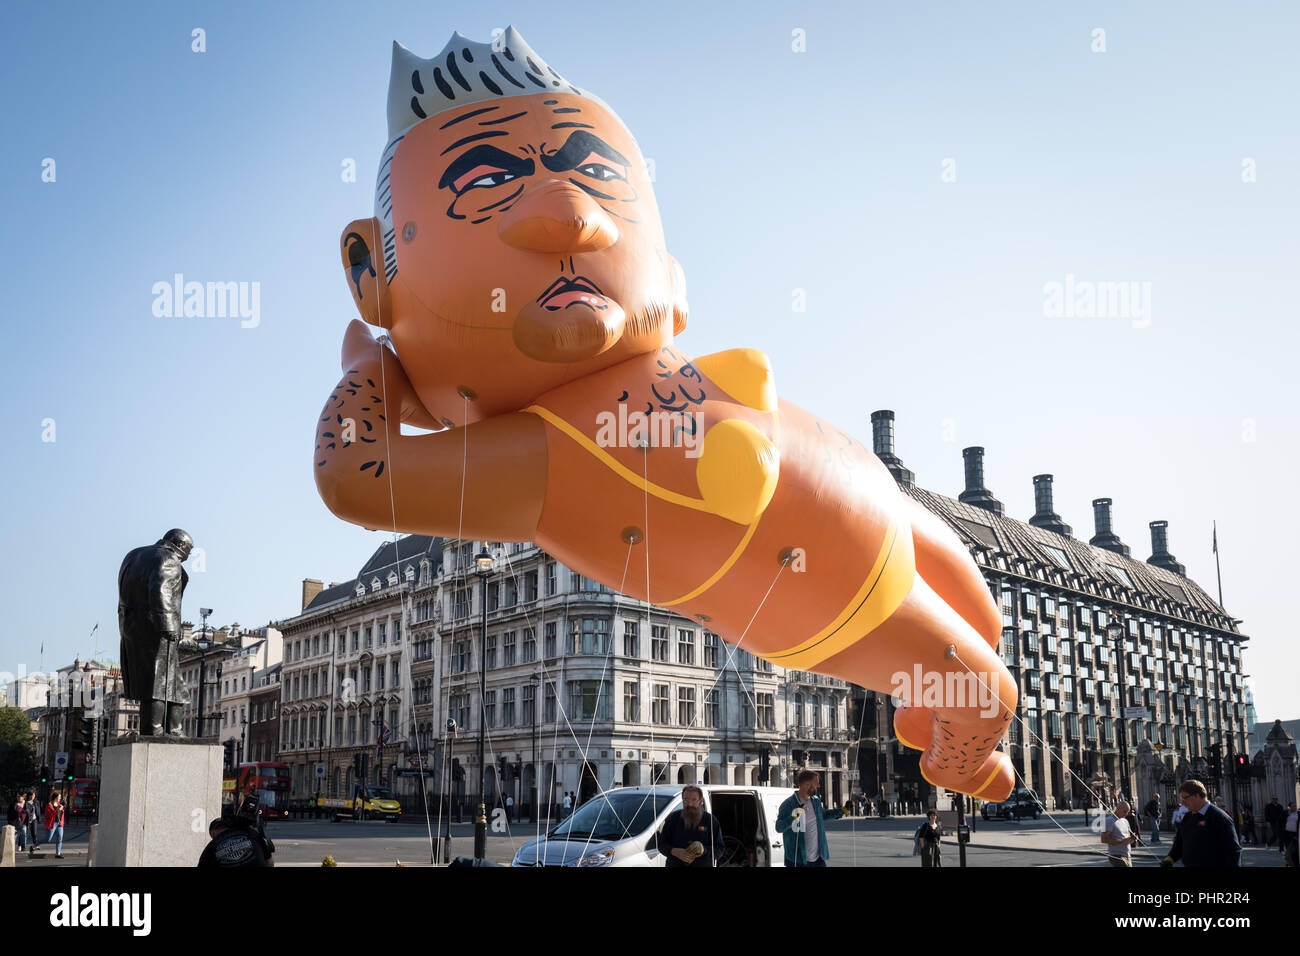 Il dirigibile gigante del sindaco di Londra Sadiq Khan in bikini giallo viene gonfiato pronto a volare oltre la piazza del Parlamento a Londra, Regno Unito. Foto Stock